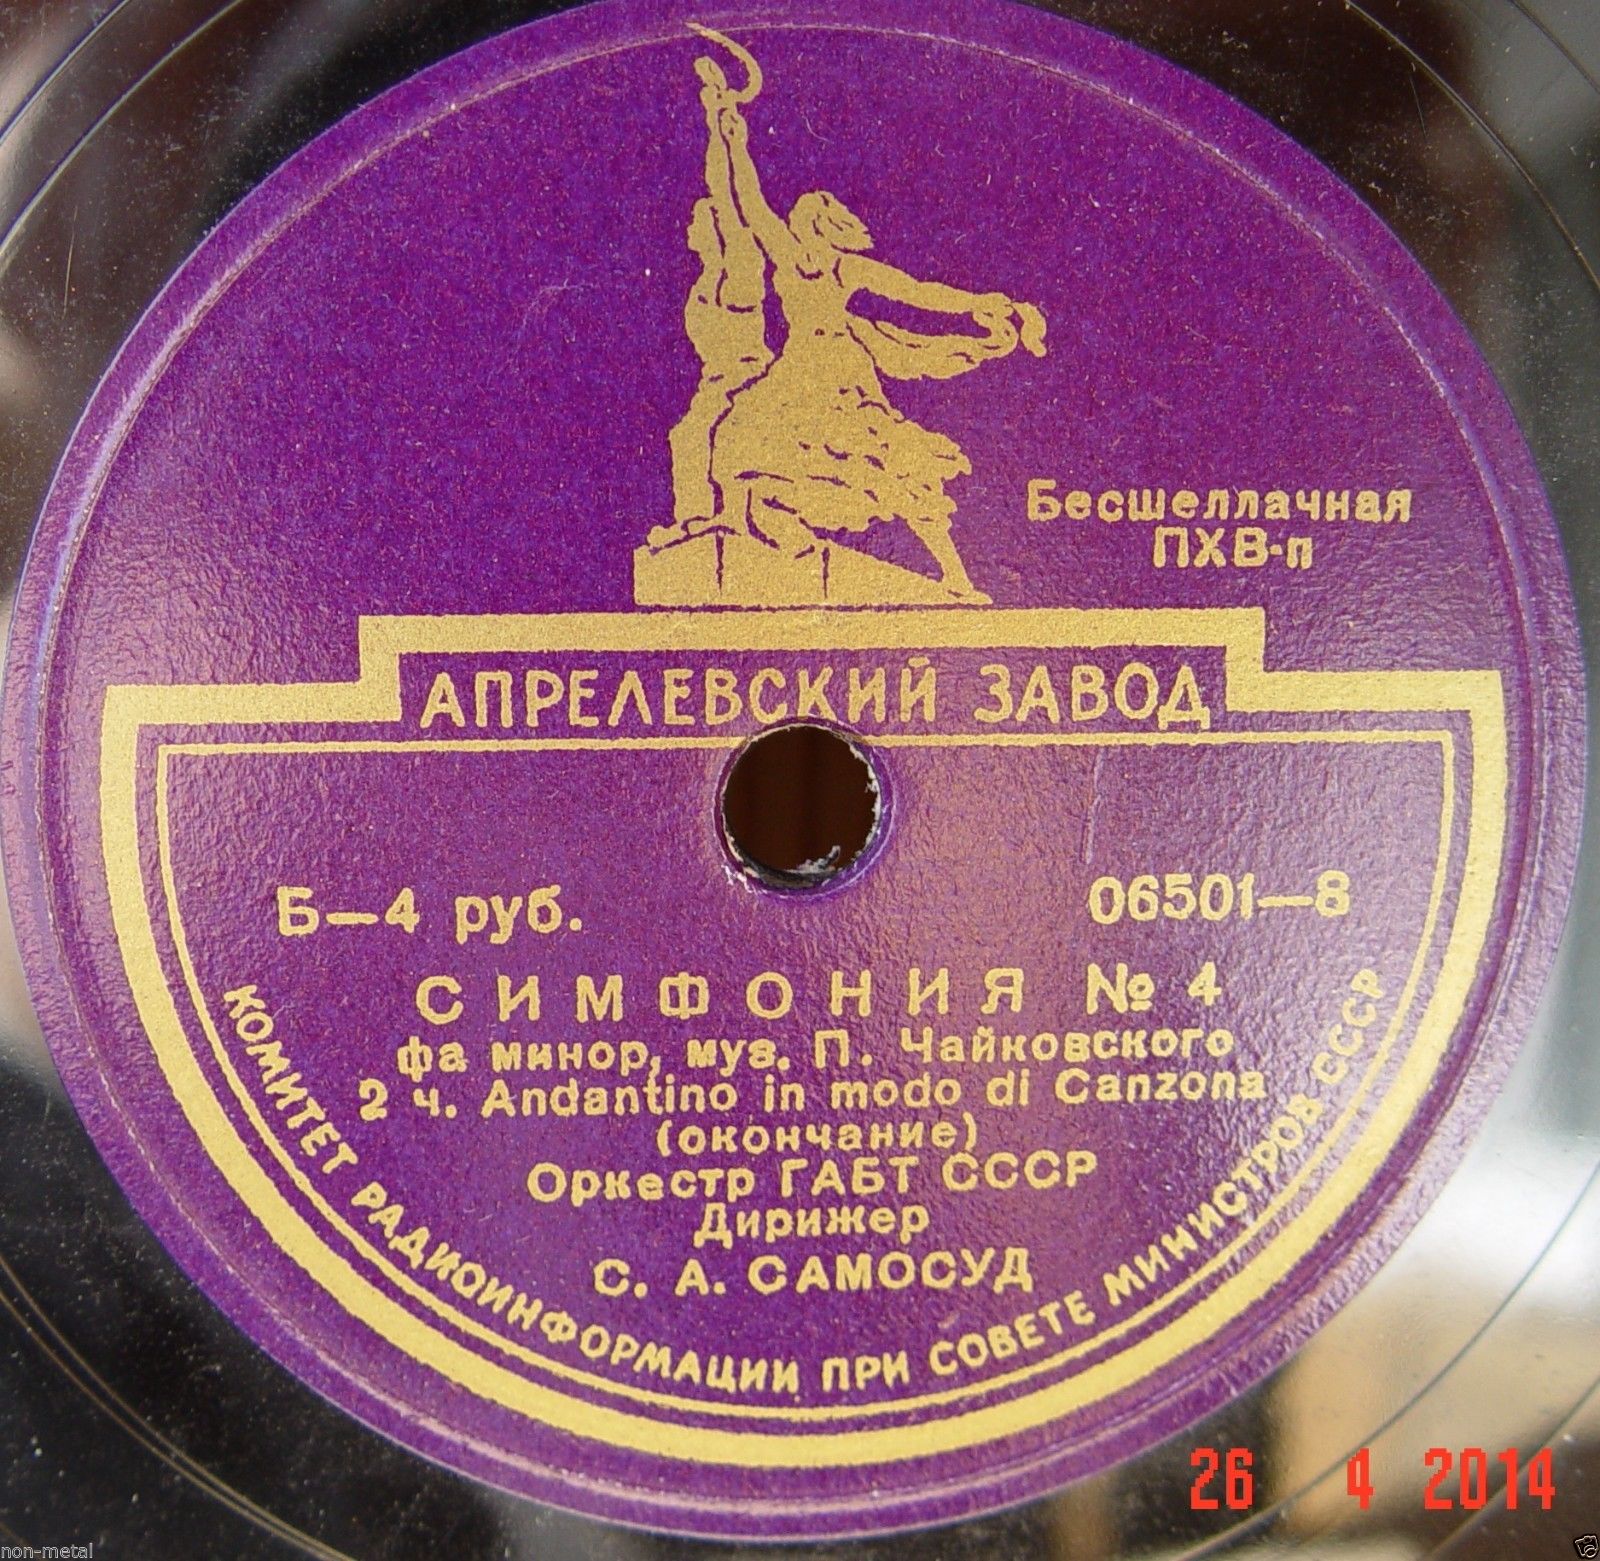 П. Чайковский: Симфония № 4 (С. Самосуд)